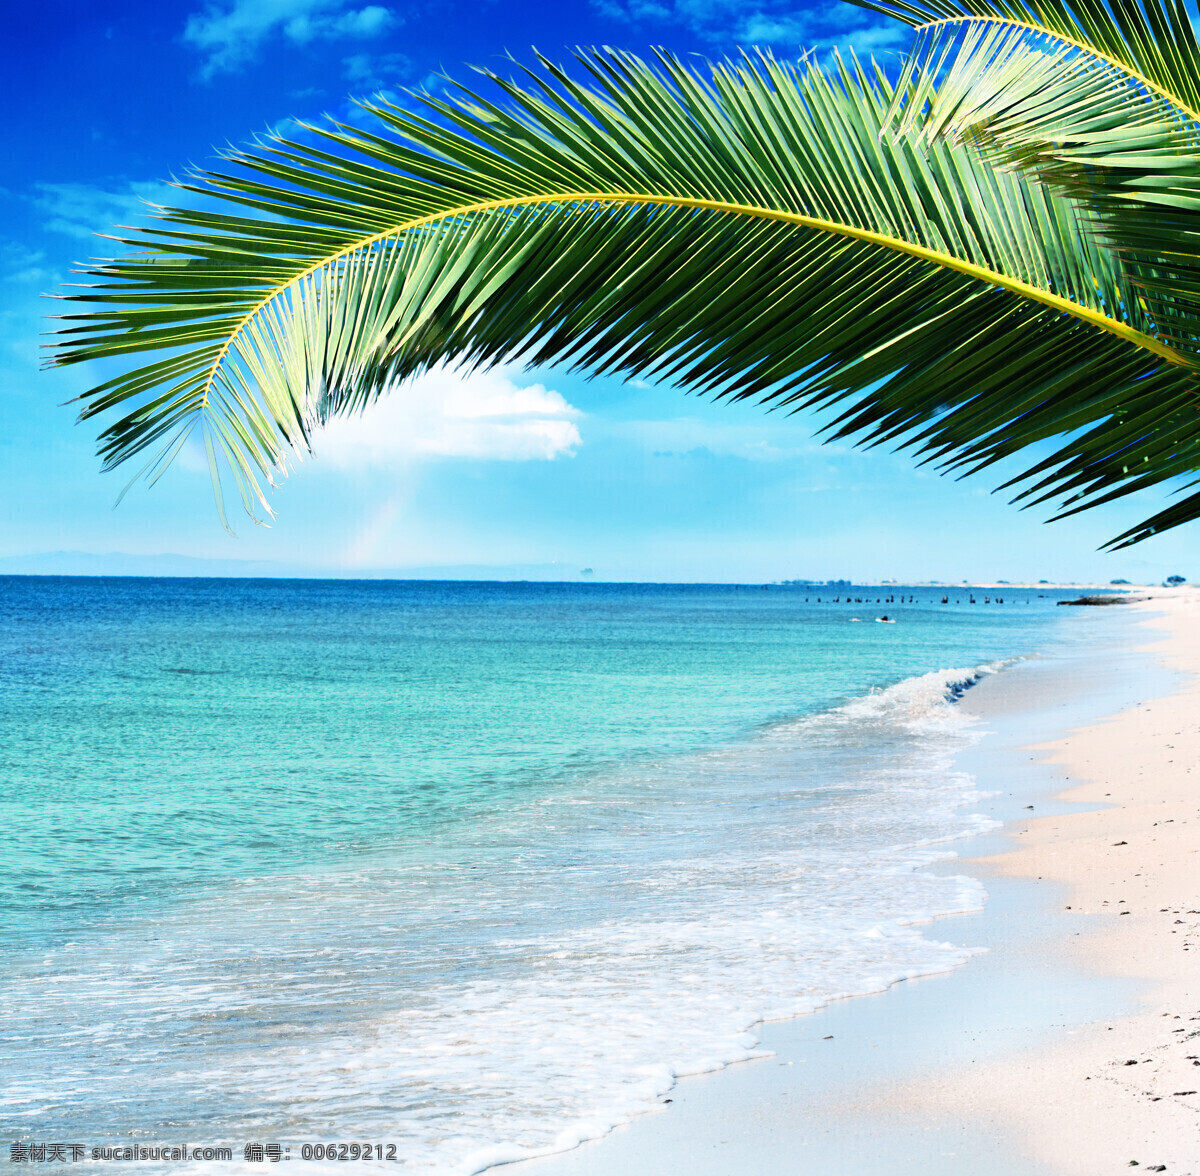 美丽 海边 风景 高清 美丽海滩 海边风景 天空 蓝天白云 夏天 夏日 夏季 沙滩 海滩 海平面 椰树 大海 海洋 海浪 海景 景色 美景 摄影图 高清图片 海洋海边 自然景观 青色 天蓝色